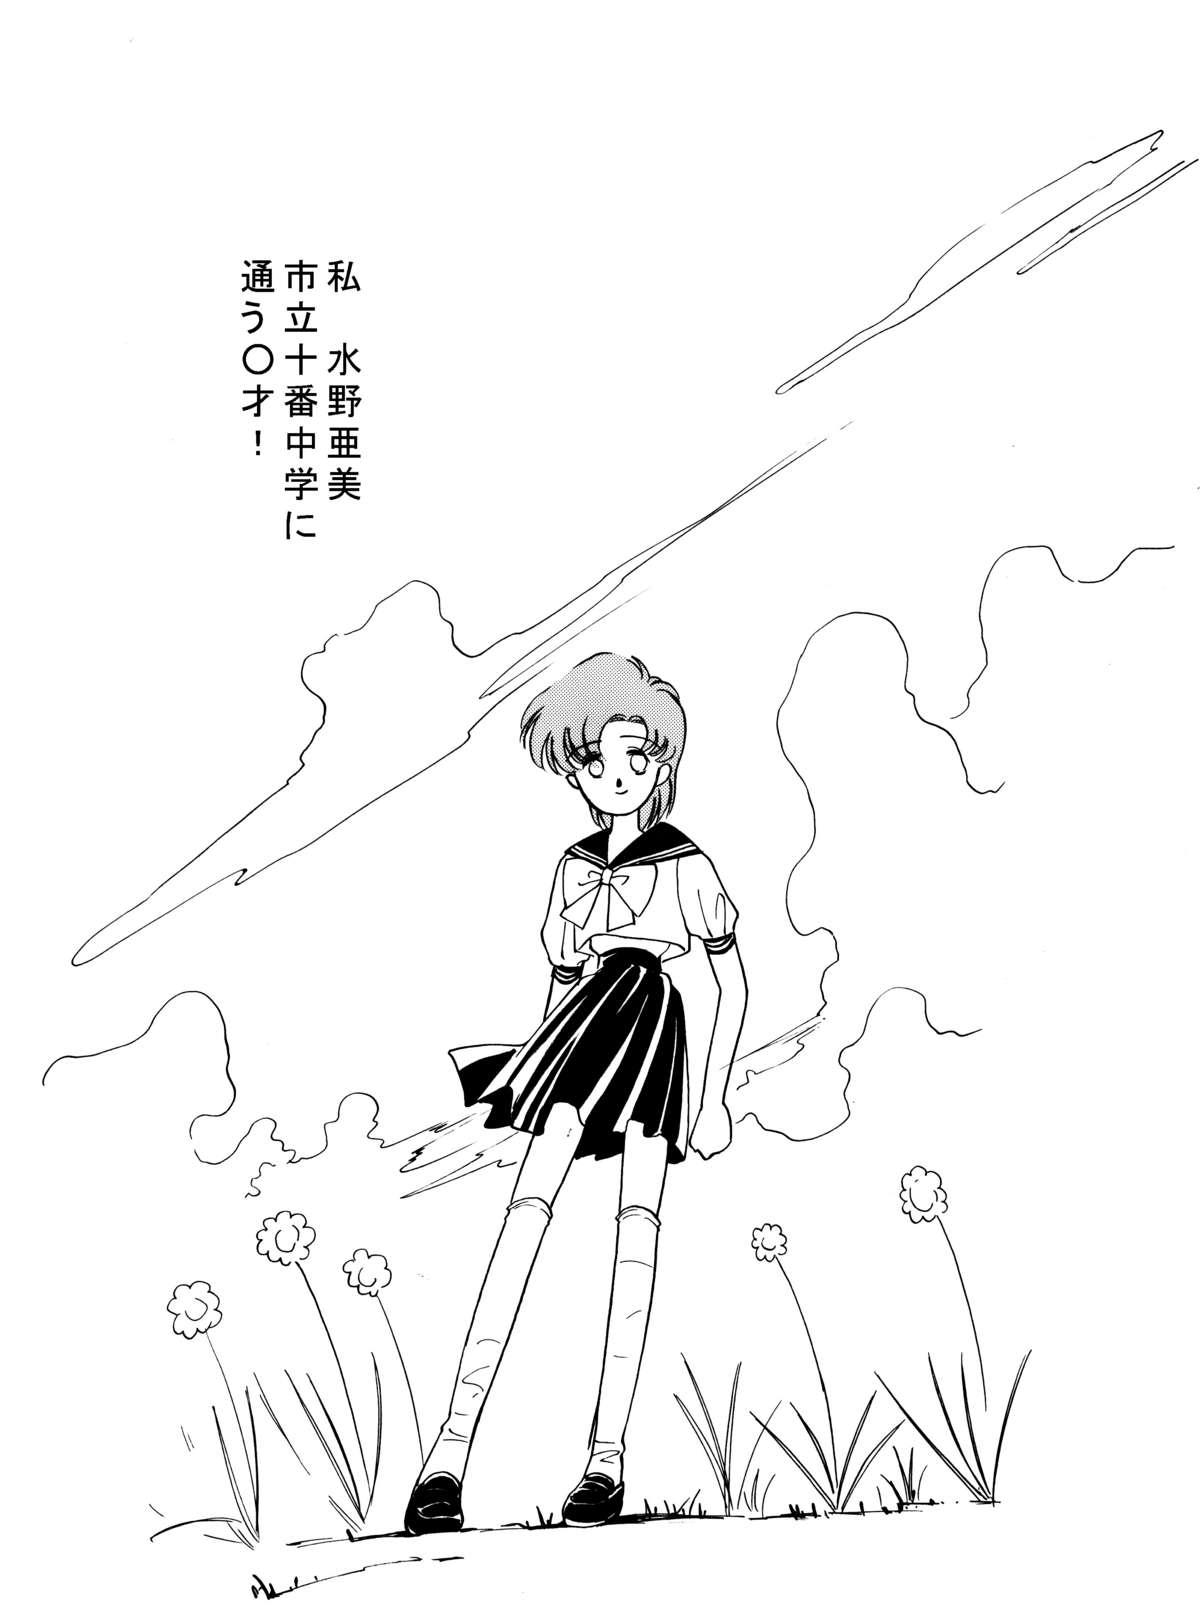 Lez Ami Kannou Monogatar - Sailor moon Muscle - Page 2